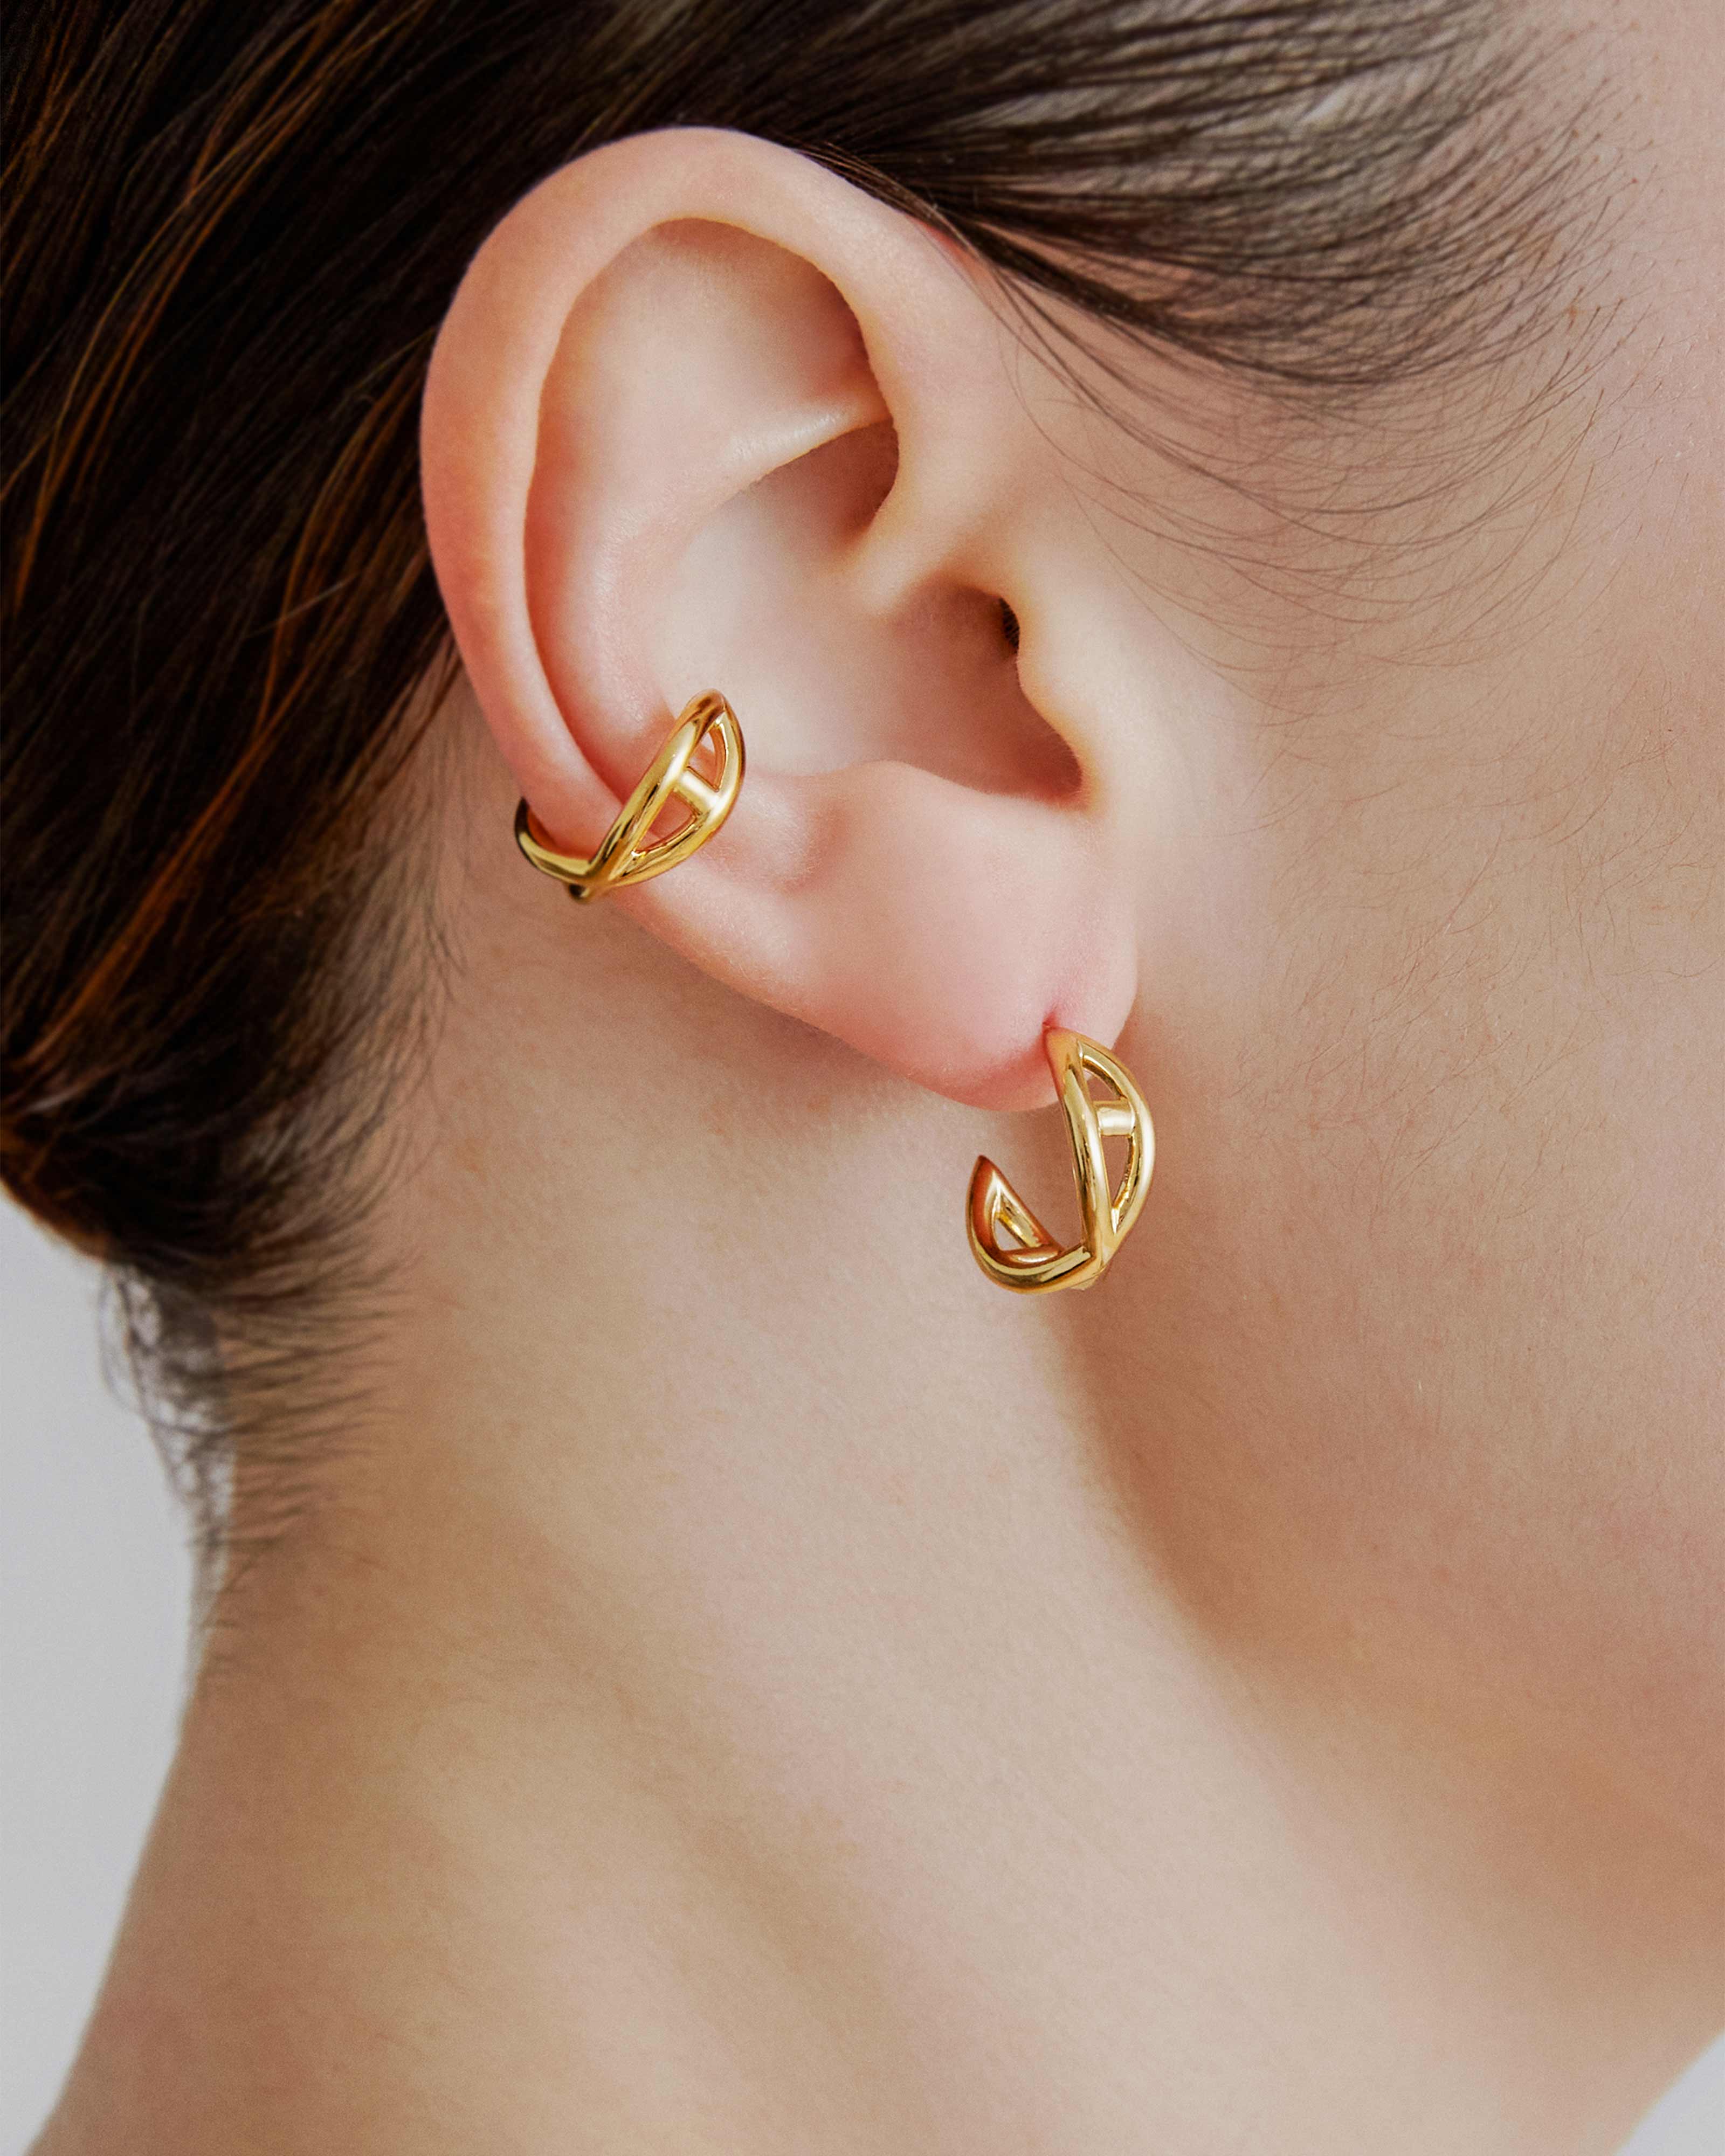 sener-besim-helix-ear-cuff-gold-earrings